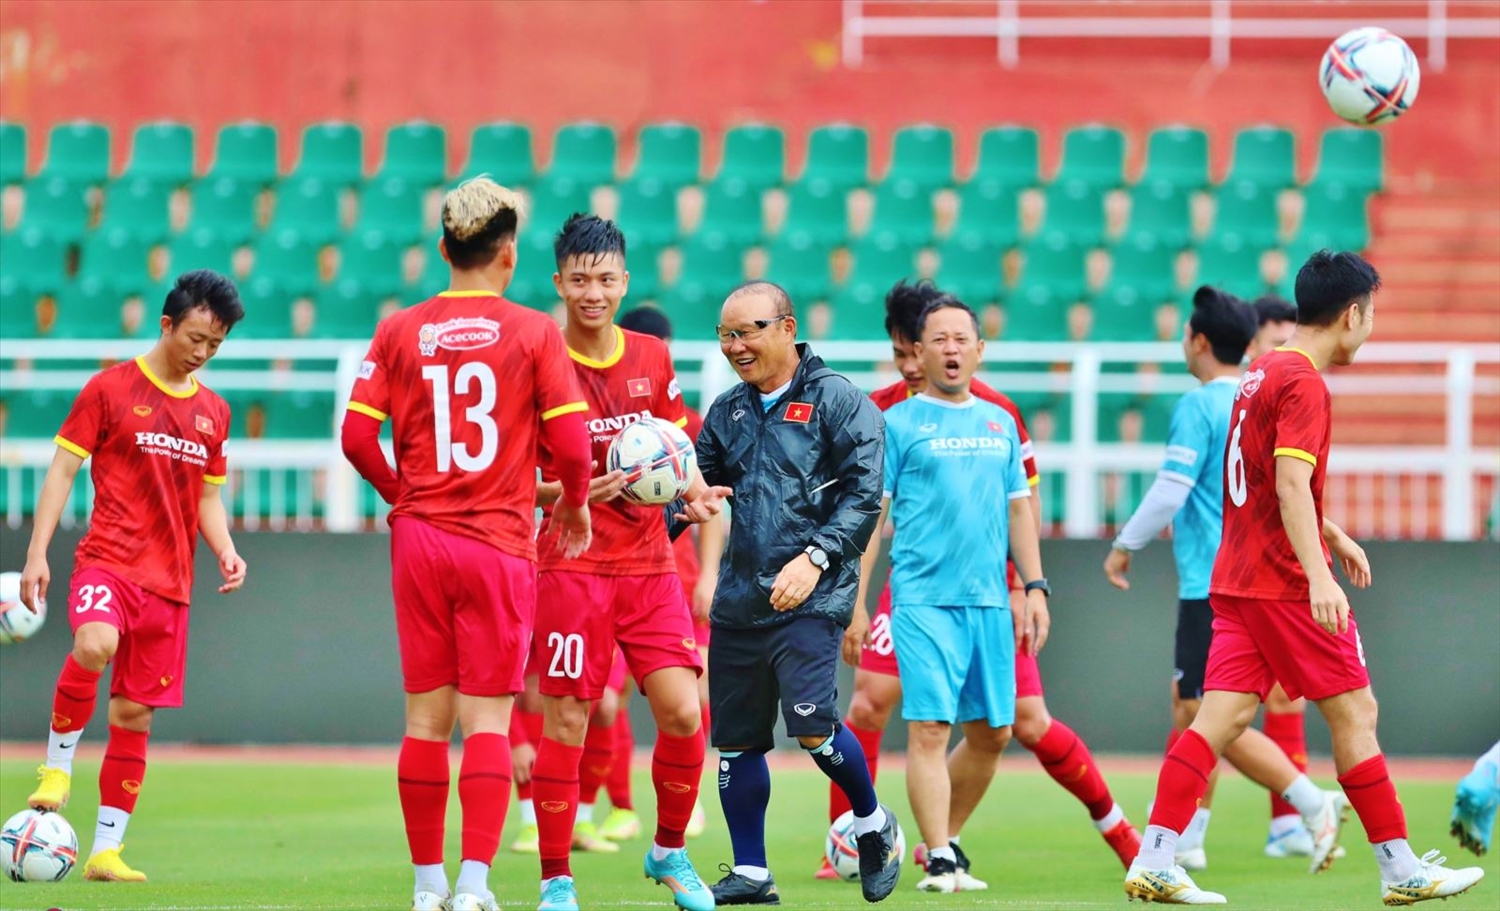 Sân Thống Nhất đã trở thành tâm điểm sốt của cả nước trong một loạt trận đấu đỉnh cao của U23 Việt Nam. Thanh Bình và các học trò đã vực dậy tinh thần và phong độ để giành được nhiều chiến thắng đẹp mắt. Xem hình ảnh của các câu lạc bộ và cầu thủ tại sân bóng này để cảm nhận được bầu không khí tuyệt vời nhé!